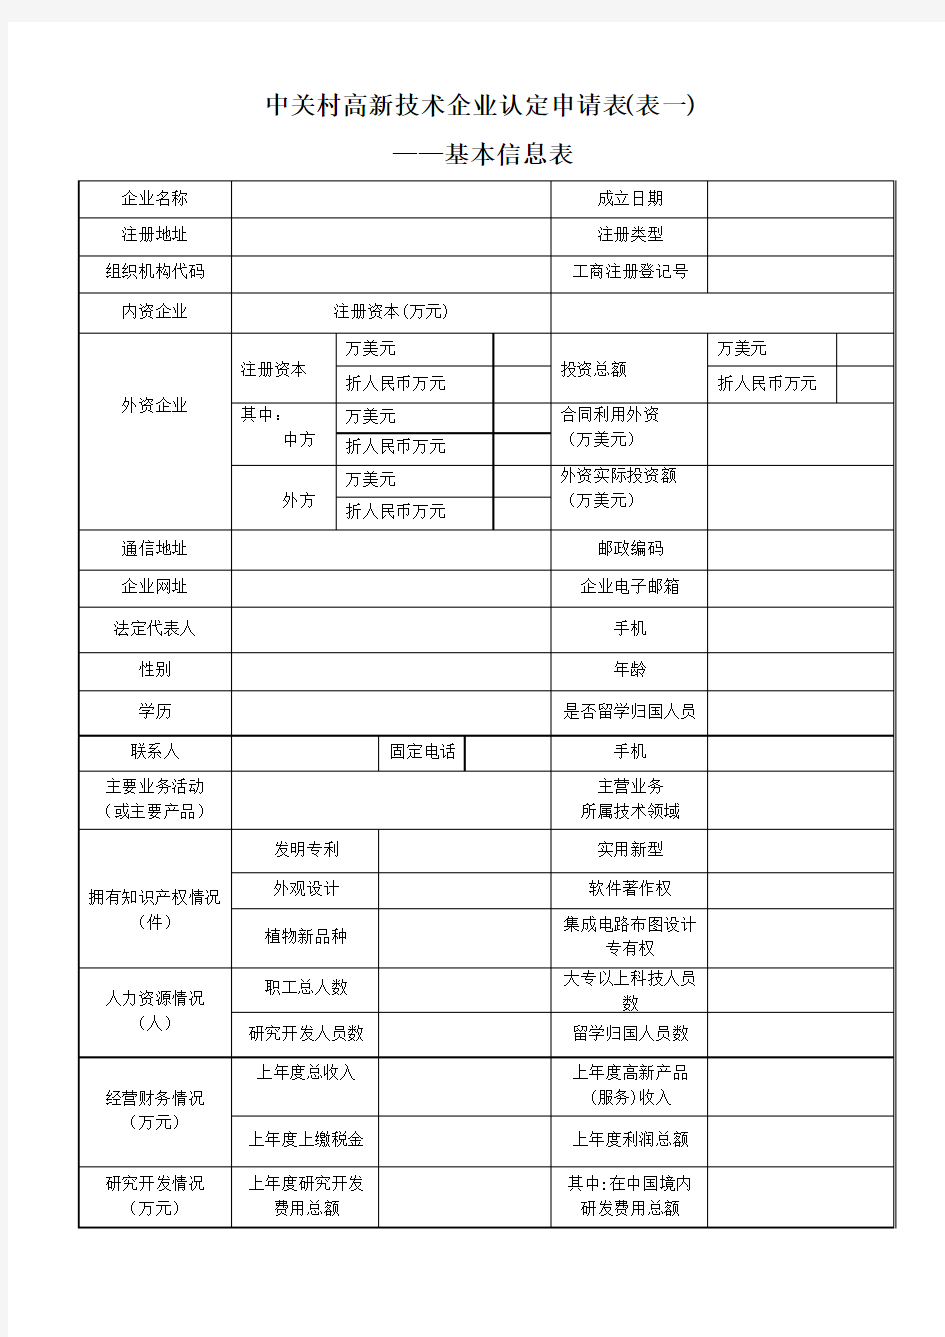 中关村高新技术企业认定申请表(表一)